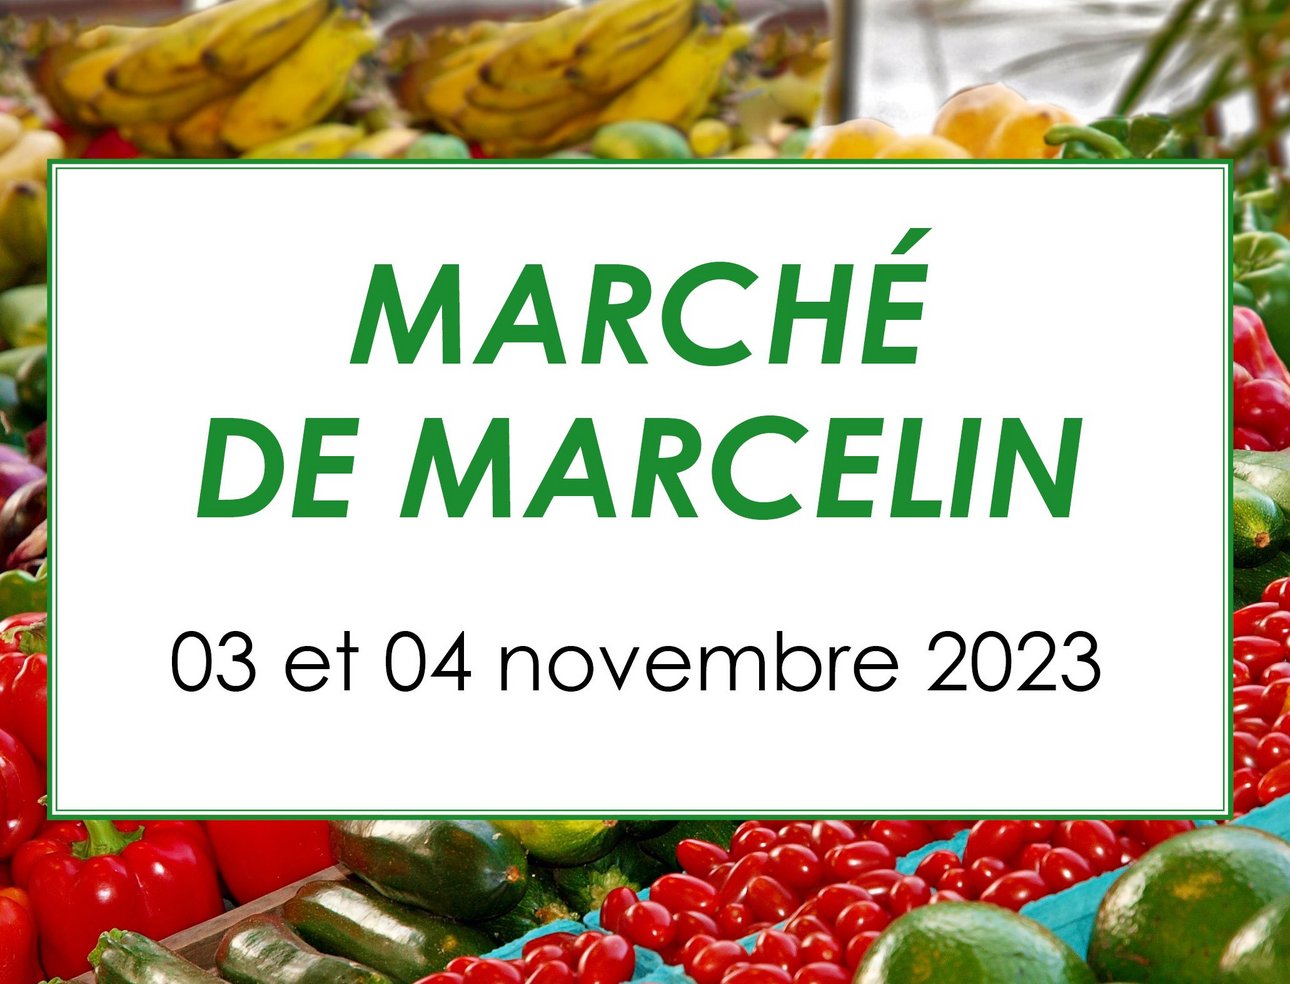 Marché de Marcelin 2023